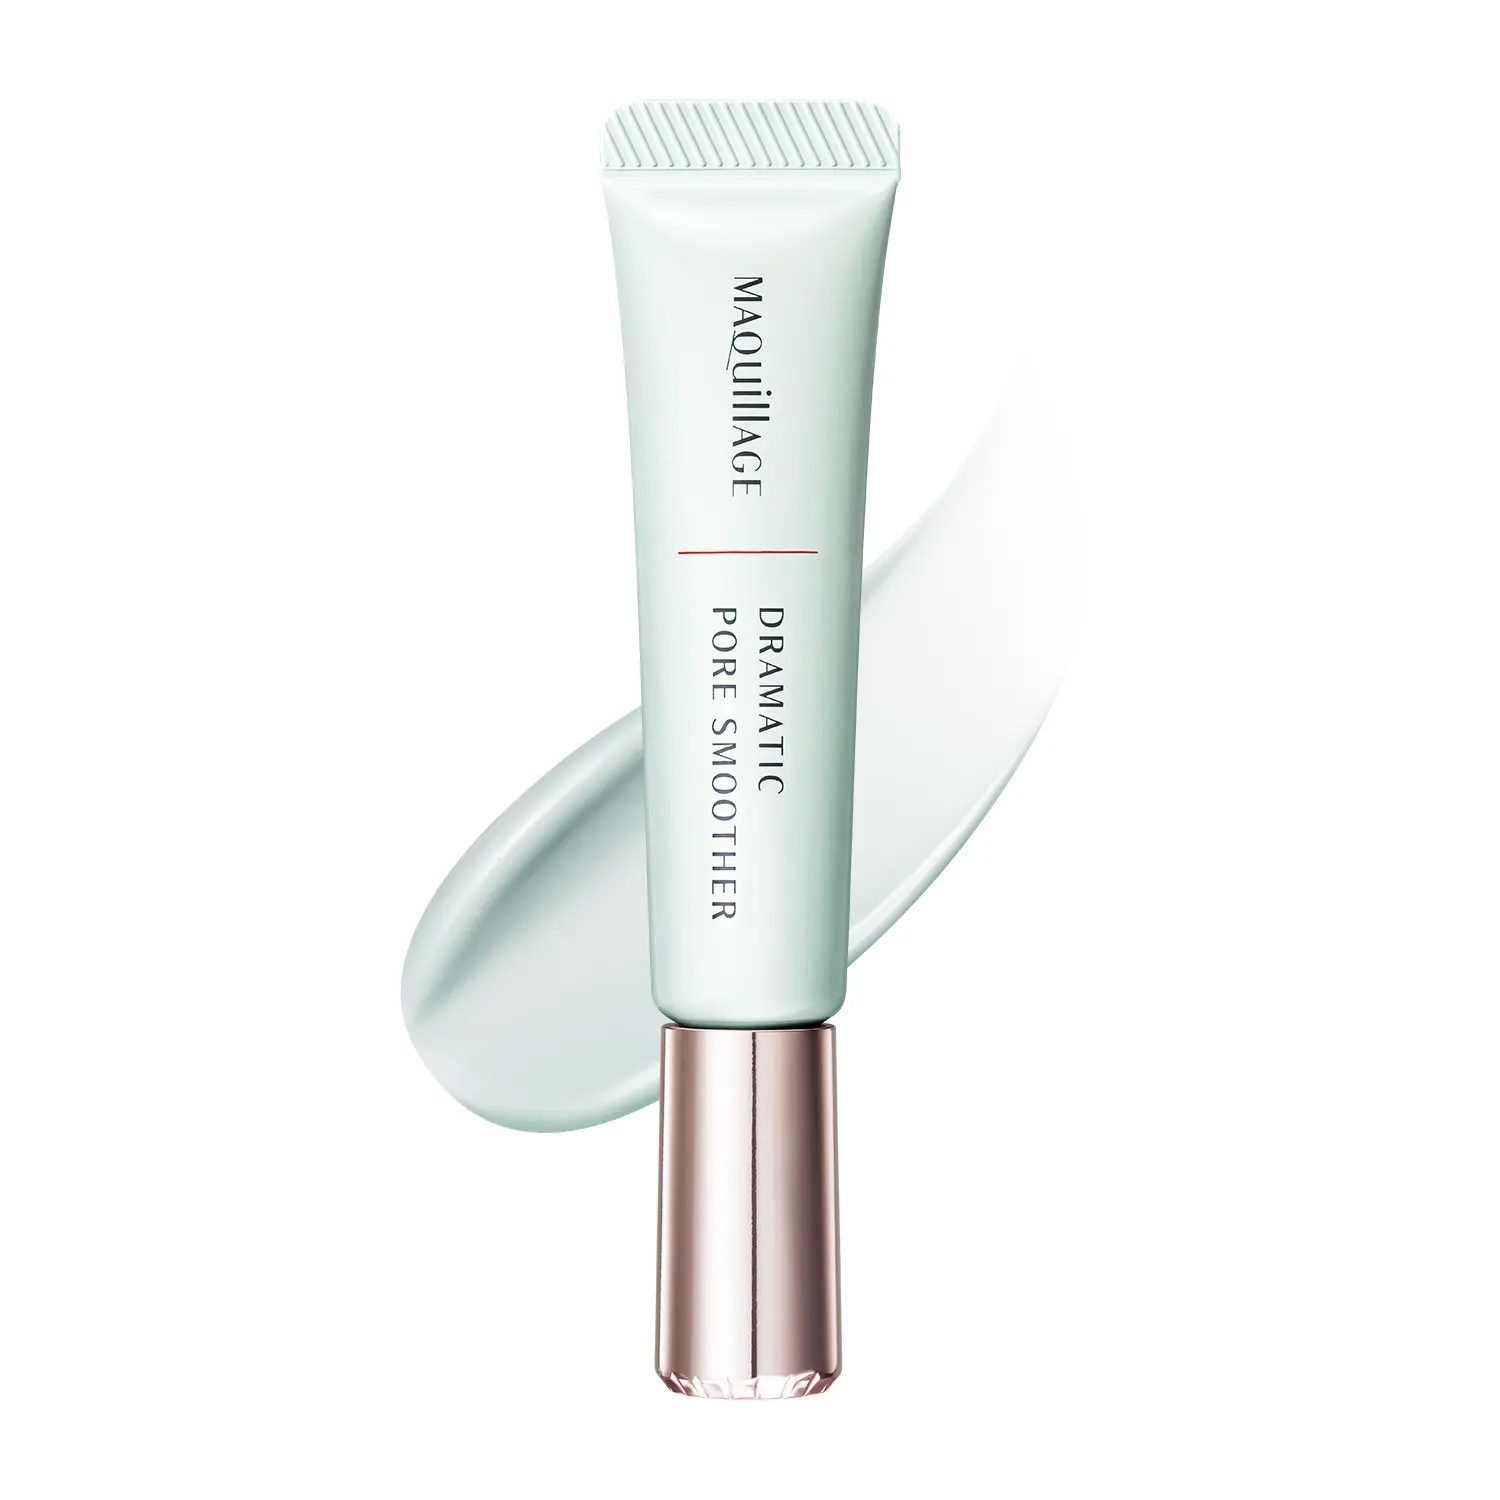 Корректирующая разглаживающая сыворотка для уменьшения пор Shiseido Maquillage Dramatic Pore Smoother